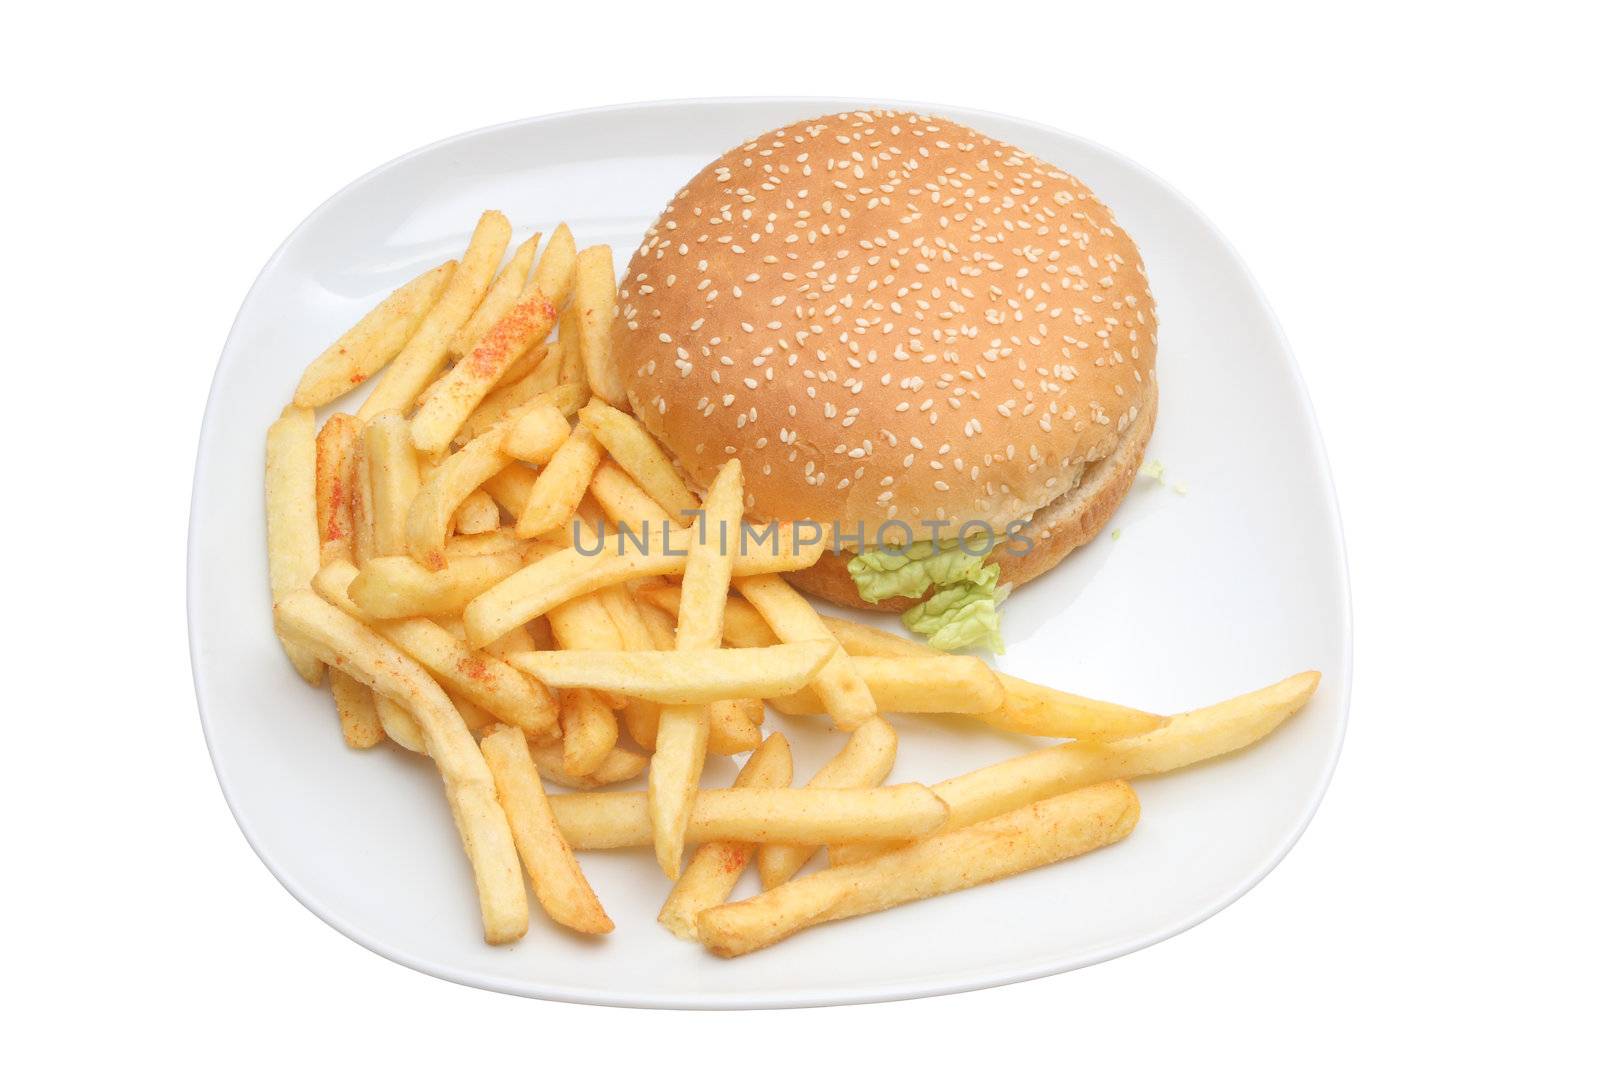 Hamburger and fries by sumos